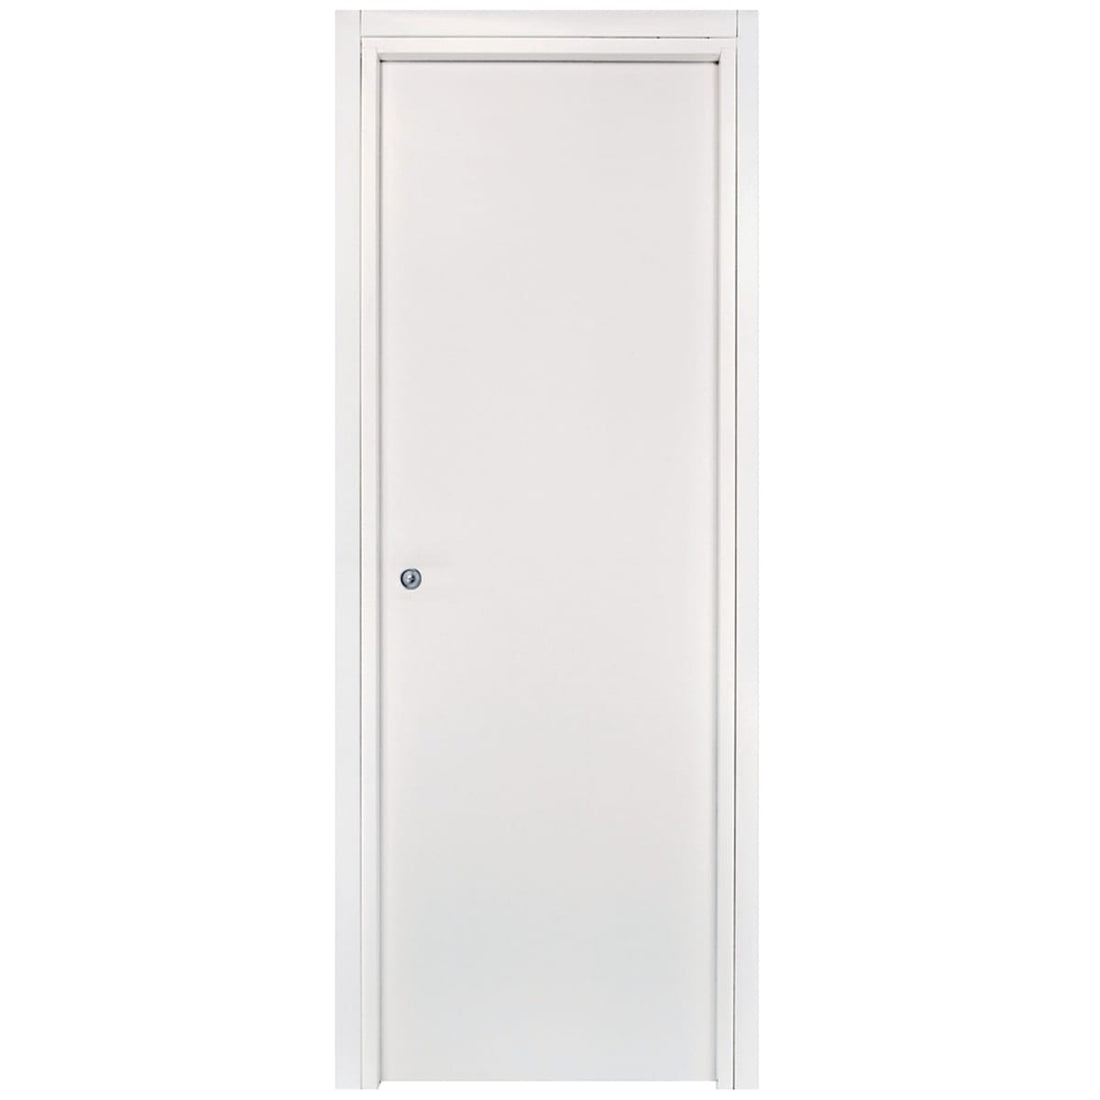 ANNA DOOR WHITE 70X210 CM SLIDING INSIDE WALL CHROME HARDWARE